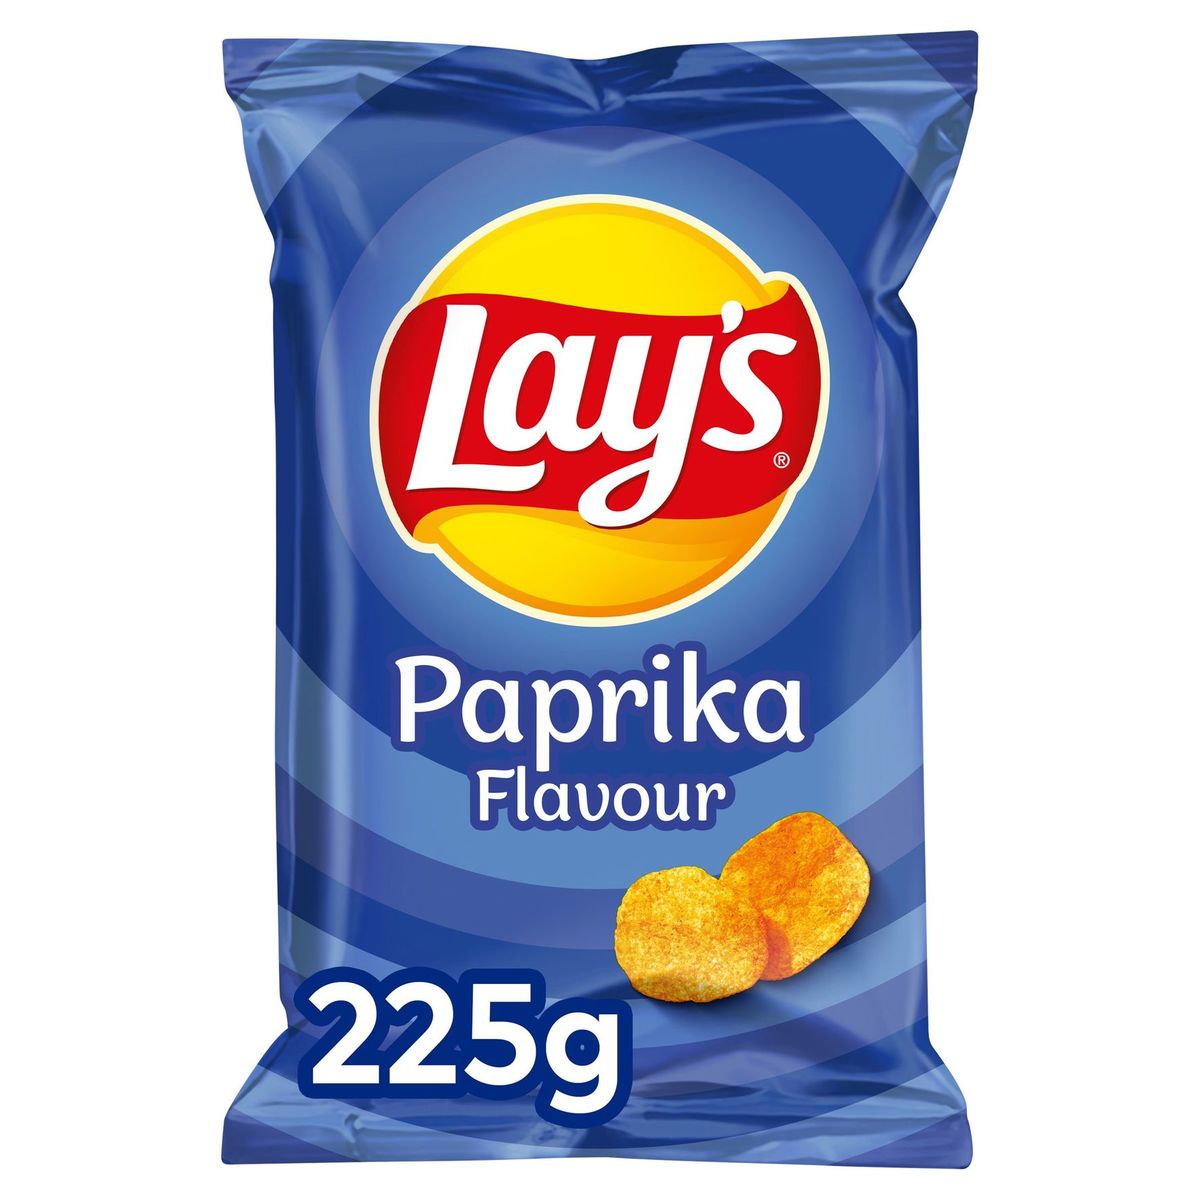 Lay's Chips De Pommes De Terre Paprika Flavour 225g